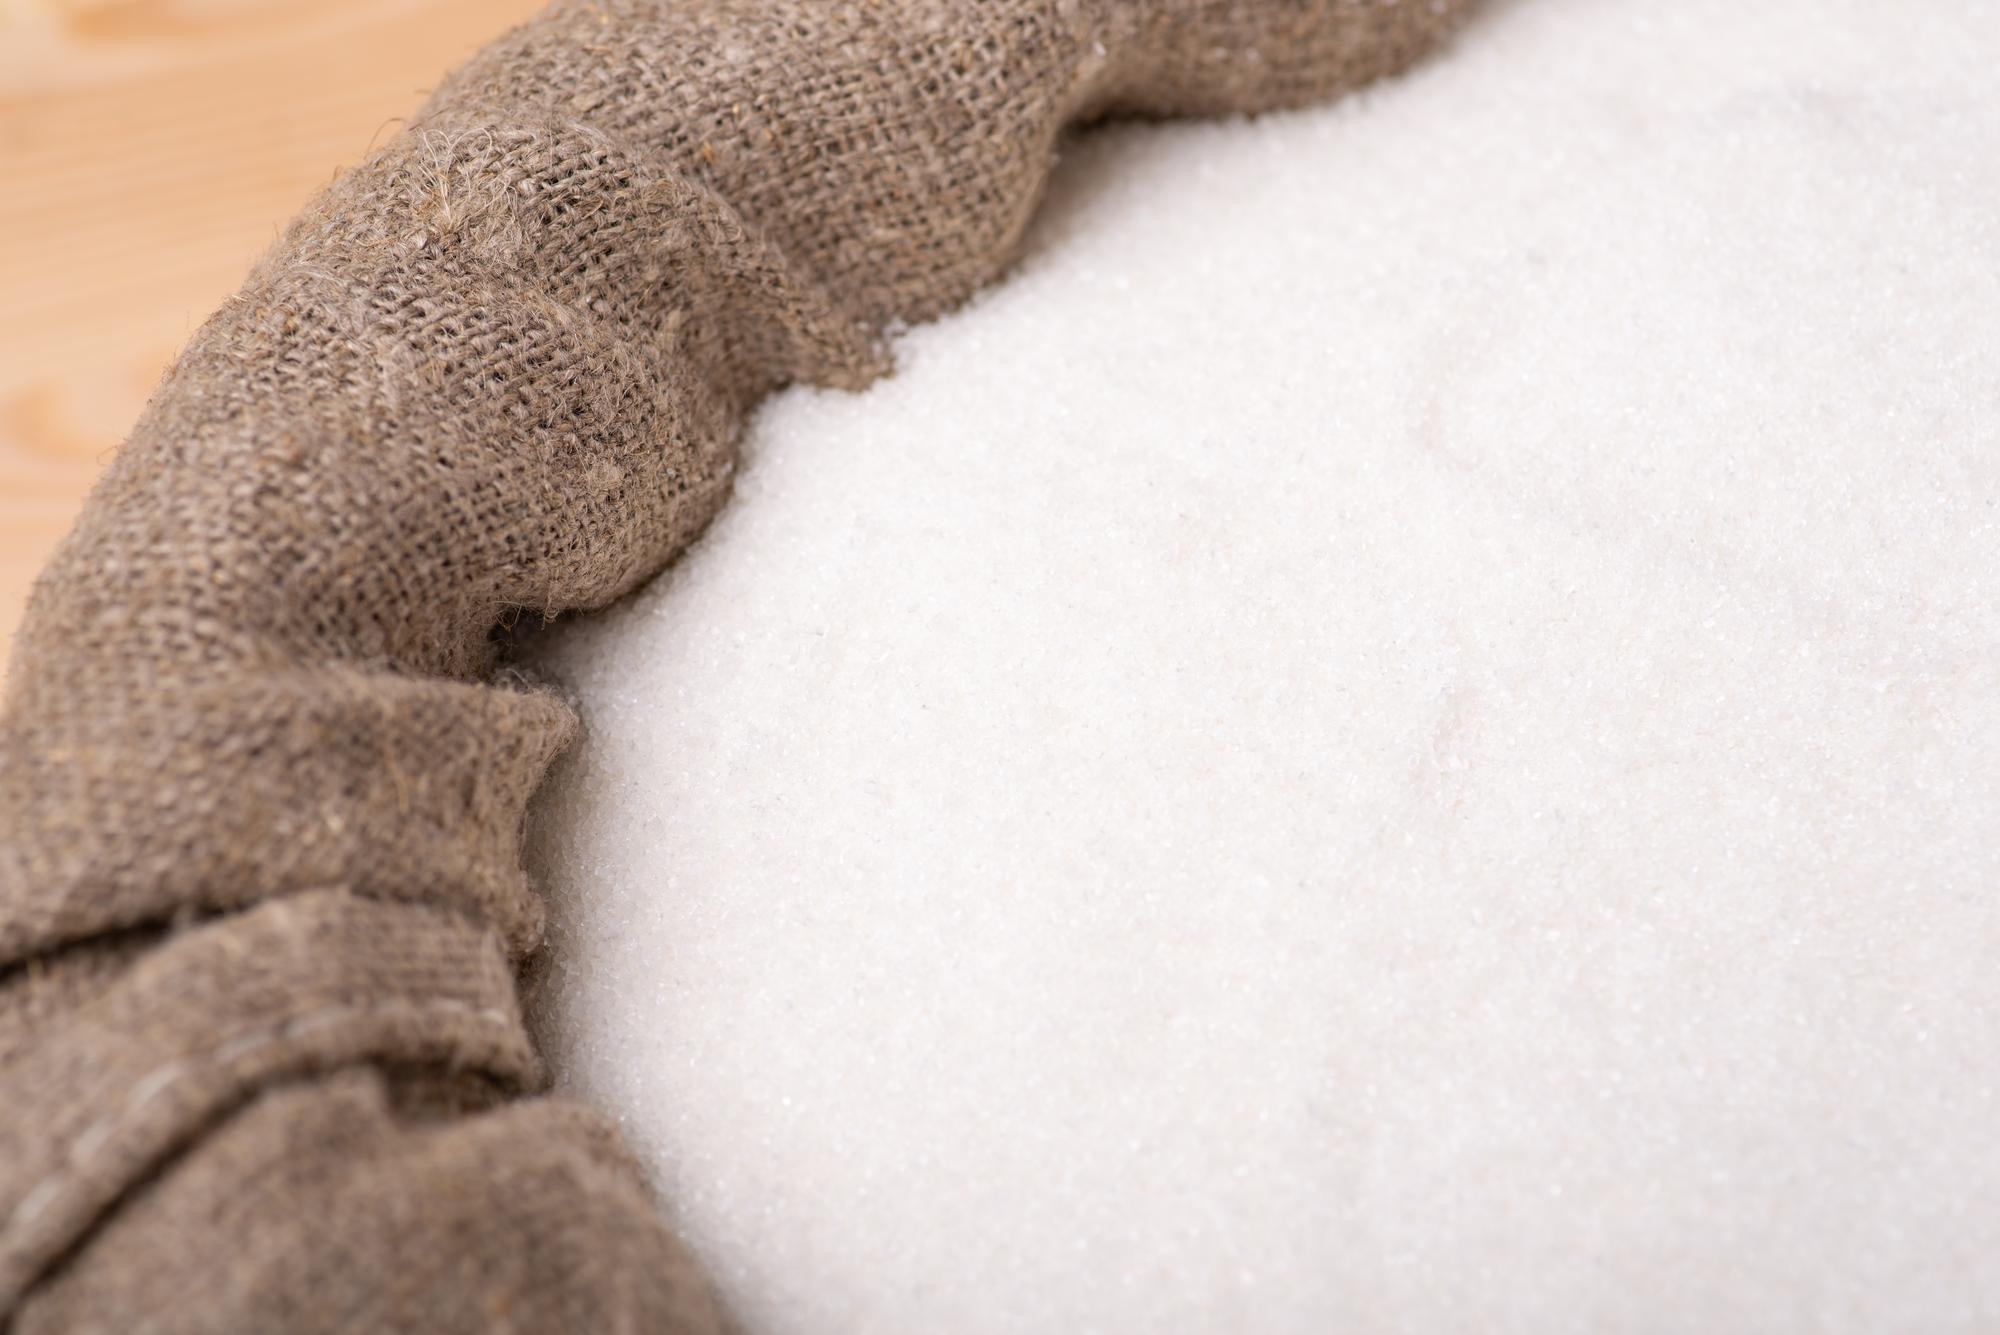 مصر تستهدف إنتاج 3 ملايين طن من السكر في الموسم الحالي